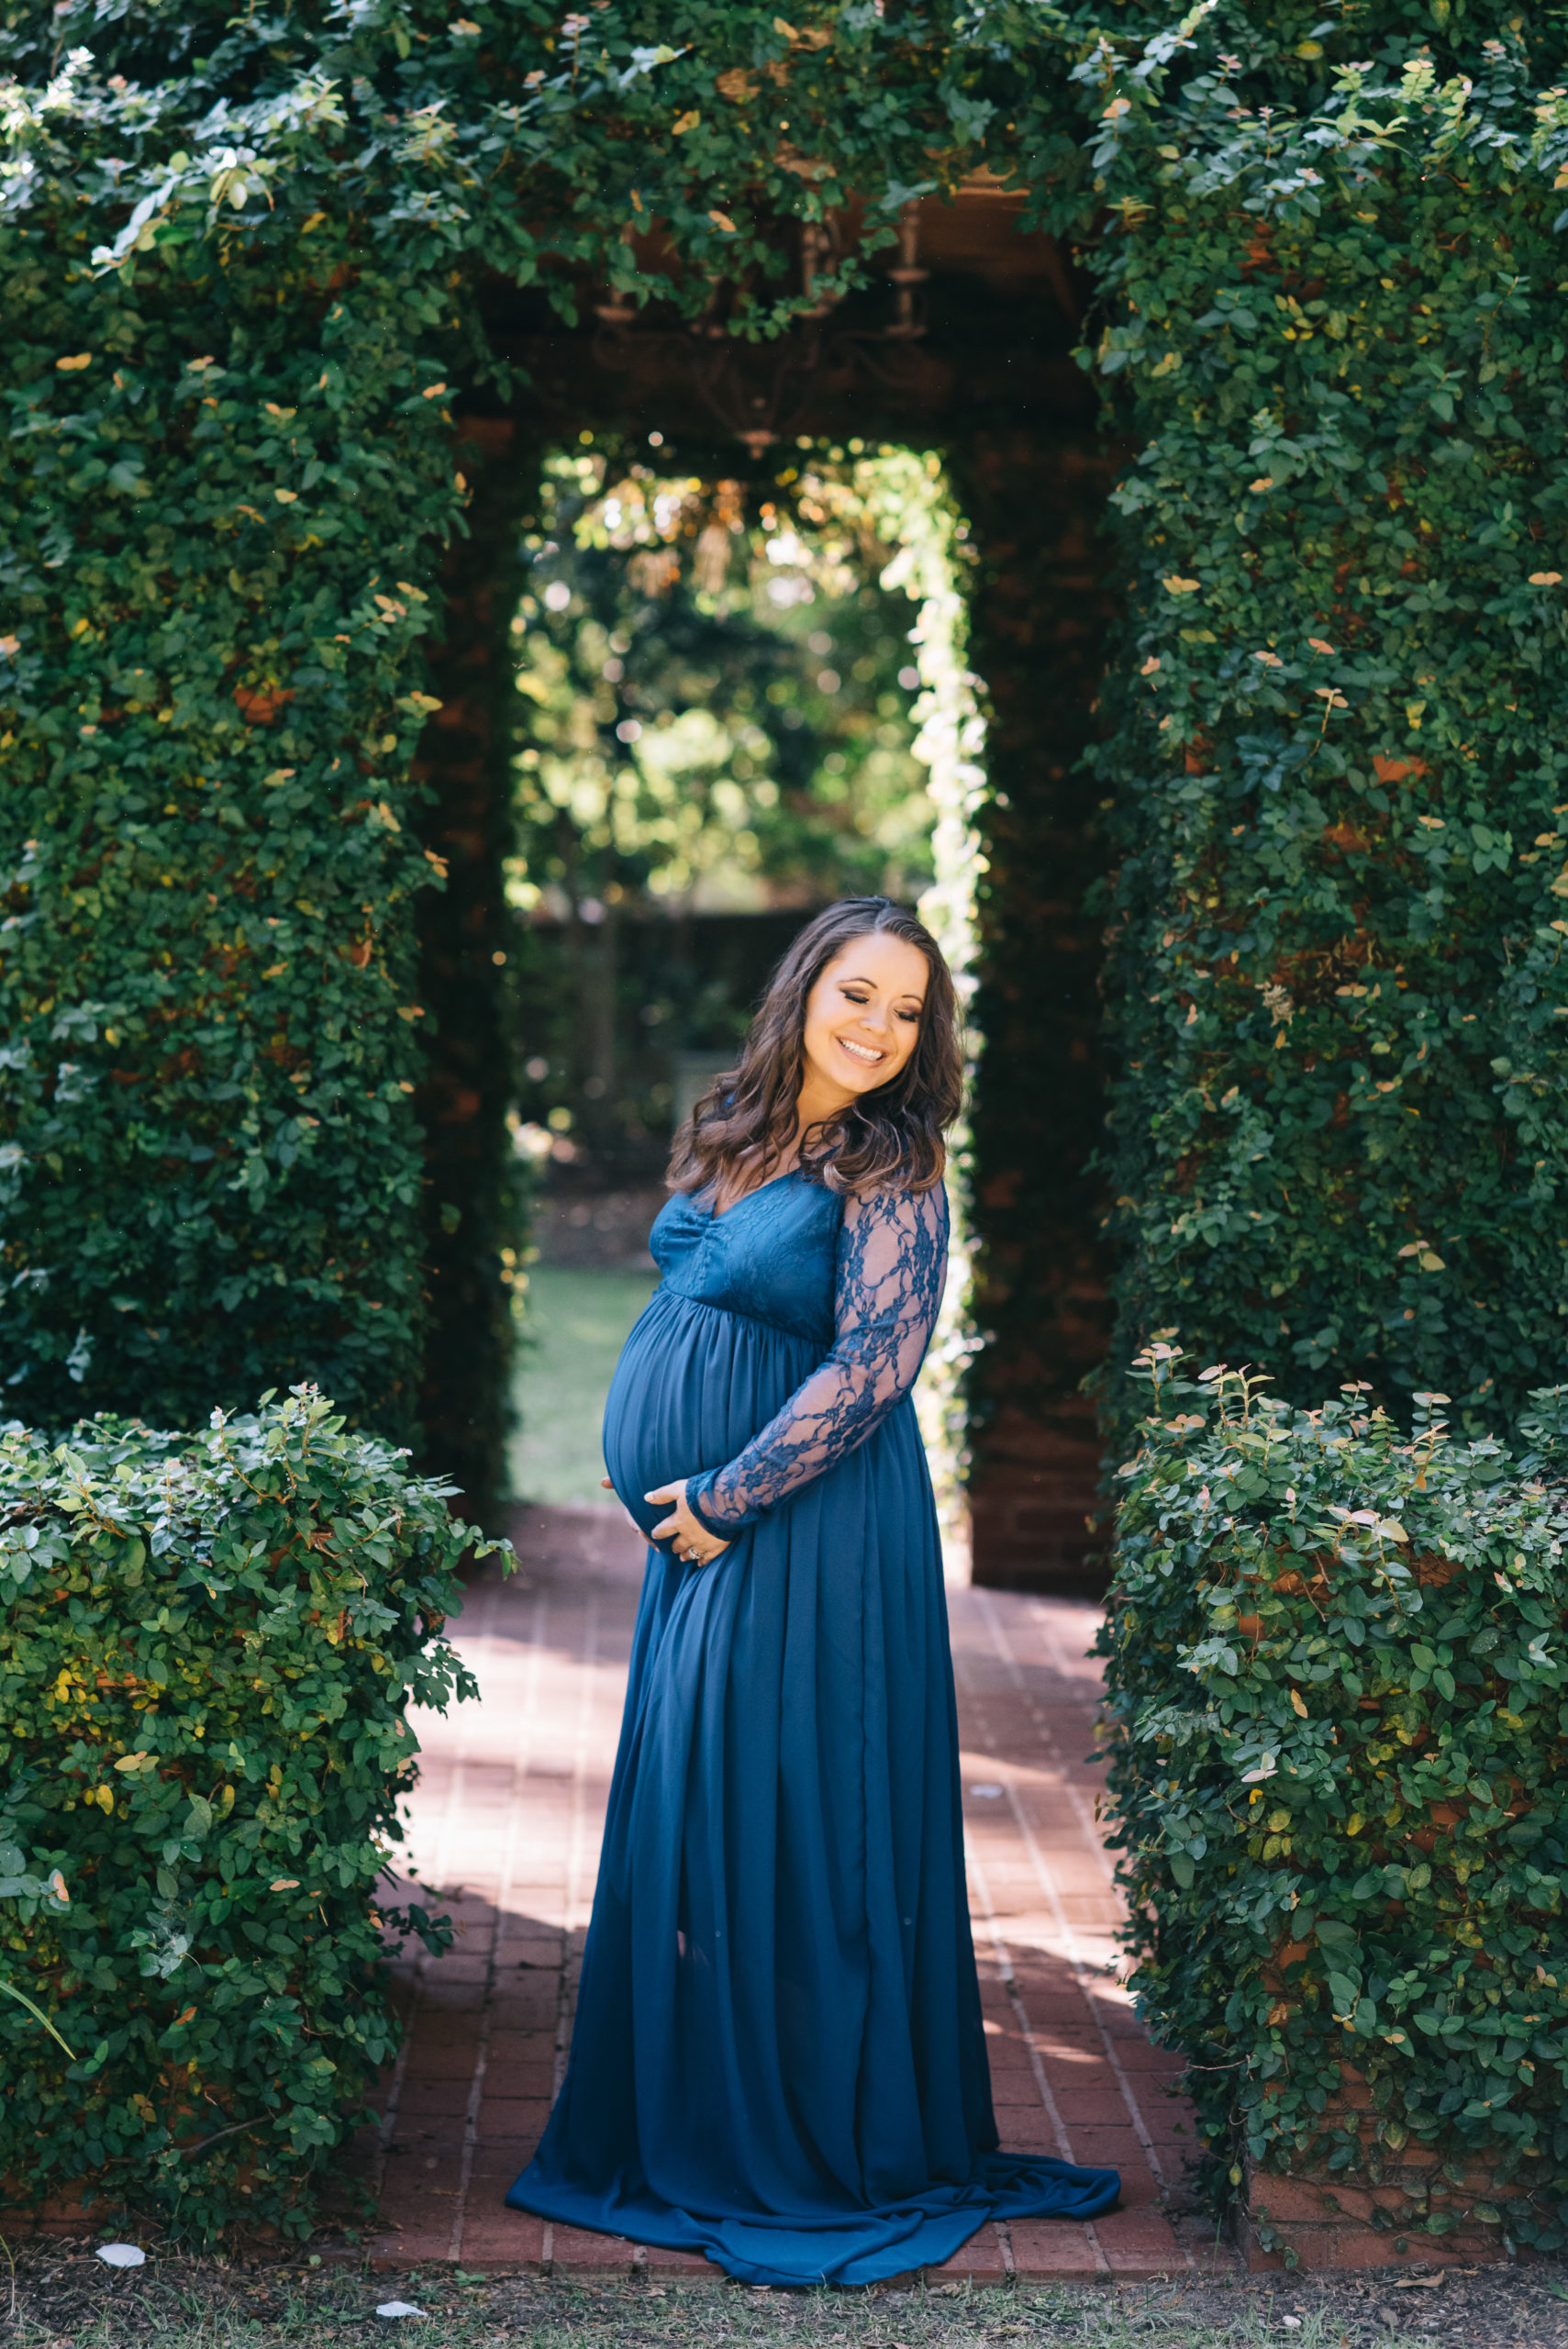 Rose Hill Aiken, SC Maternity Photographer